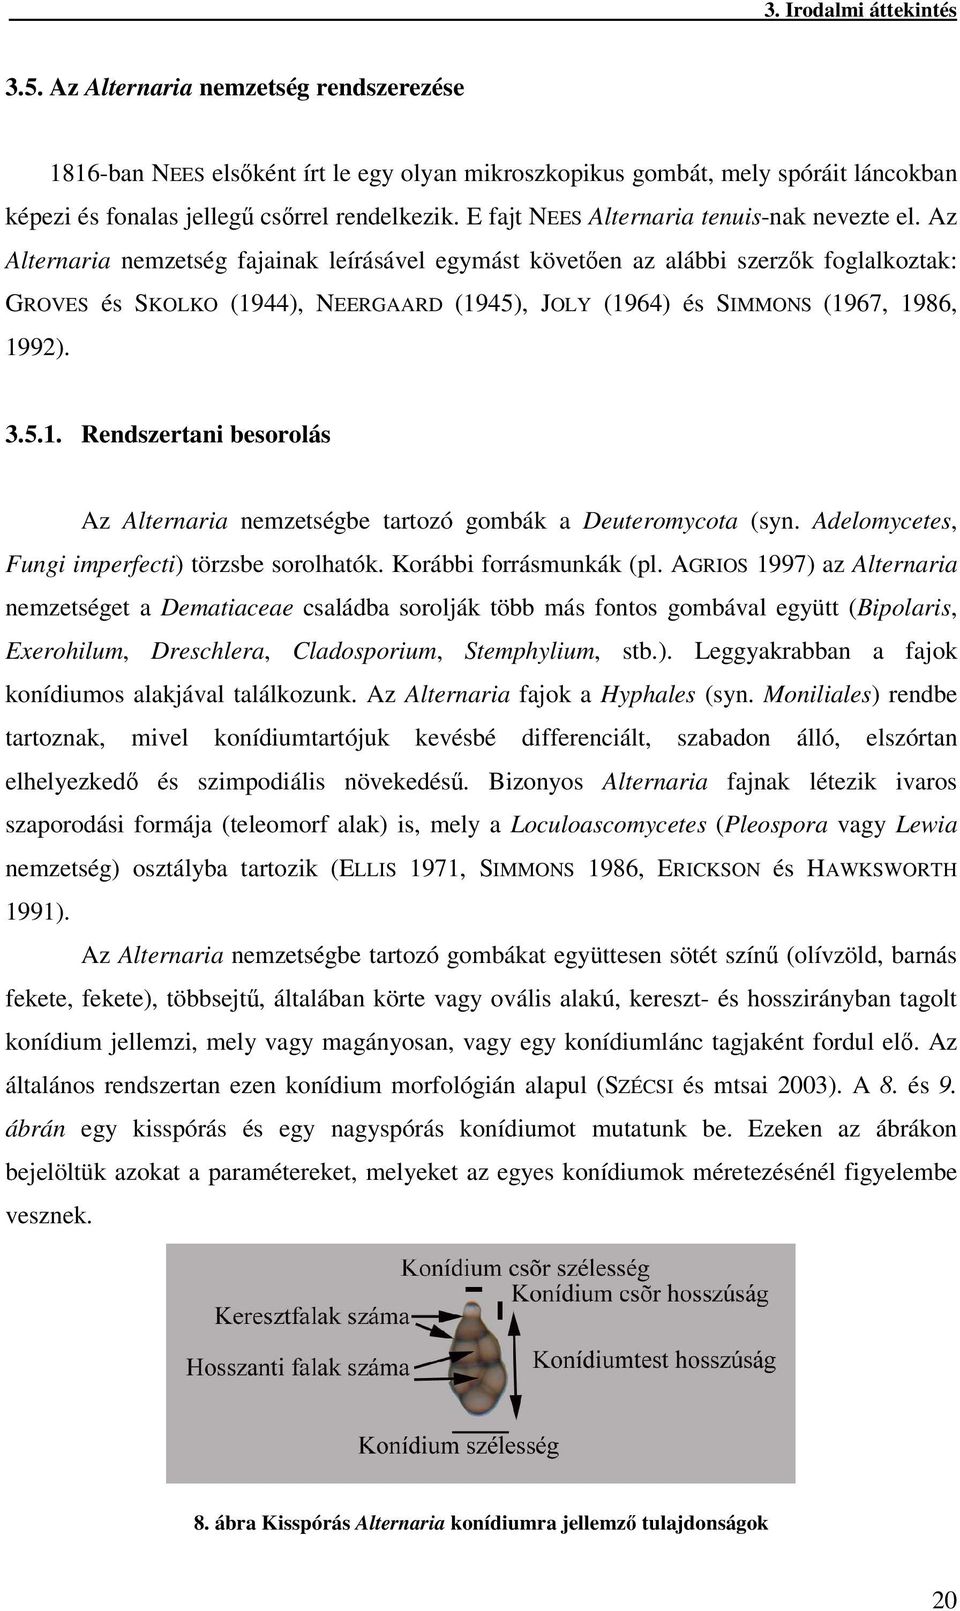 Az Alternaria nemzetség fajainak leírásável egymást követen az alábbi szerzk foglalkoztak: GROVES és SKOLKO (1944), NEERGAARD (1945), JOLY (1964) és SIMMONS (1967, 1986, 1992). 3.5.1. Rendszertani besorolás Az Alternaria nemzetségbe tartozó gombák a Deuteromycota (syn.